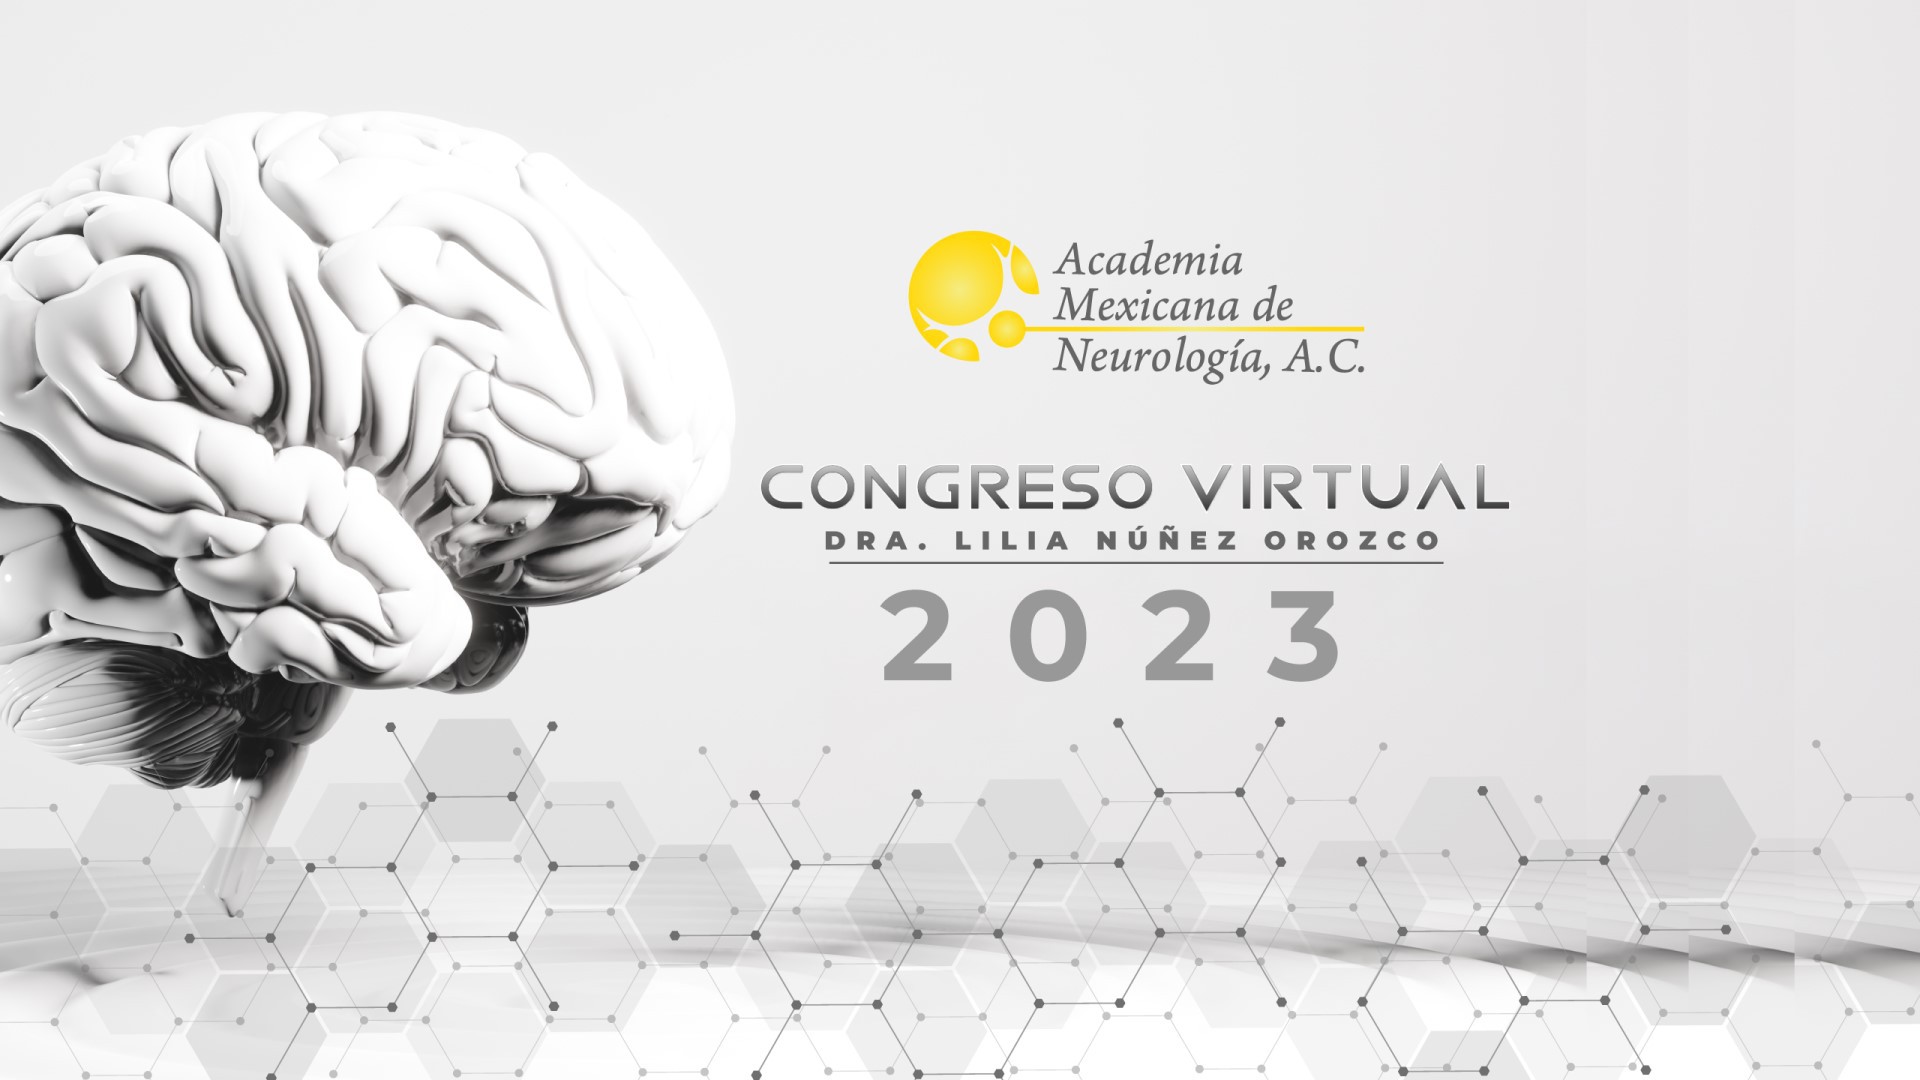 Congreso Virtual de Neurología 2023 "Dra. Lilia Núñez Orozco"